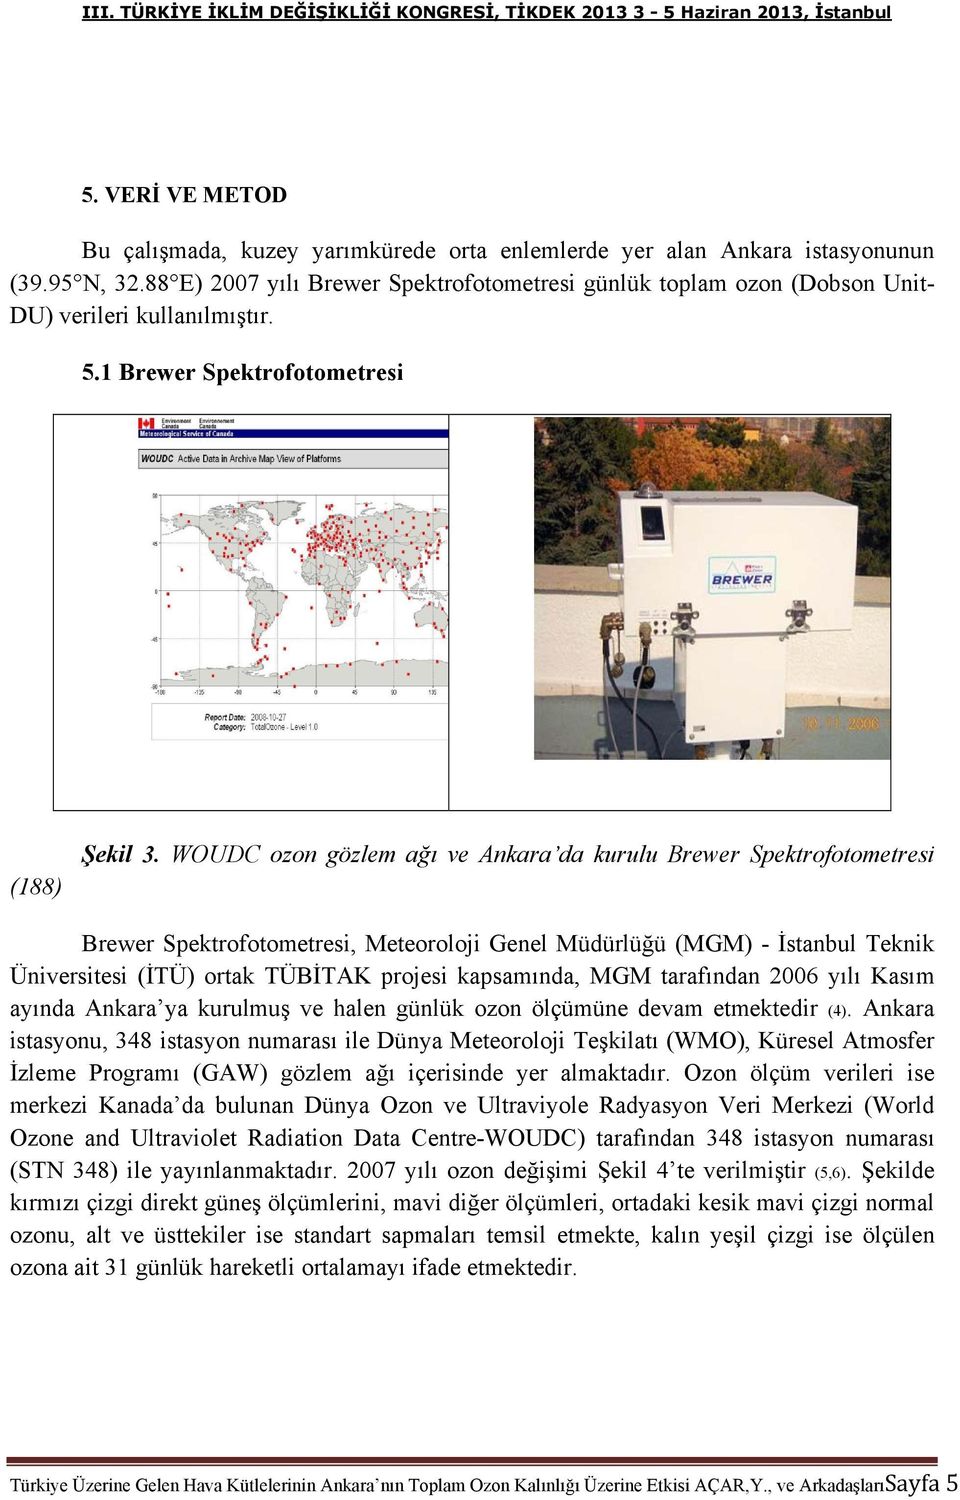 WOUDC ozon gözlem ağı ve Ankara da kurulu Brewer Spektrofotometresi Brewer Spektrofotometresi, Meteoroloji Genel Müdürlüğü (MGM) - İstanbul Teknik Üniversitesi (İTÜ) ortak TÜBİTAK projesi kapsamında,